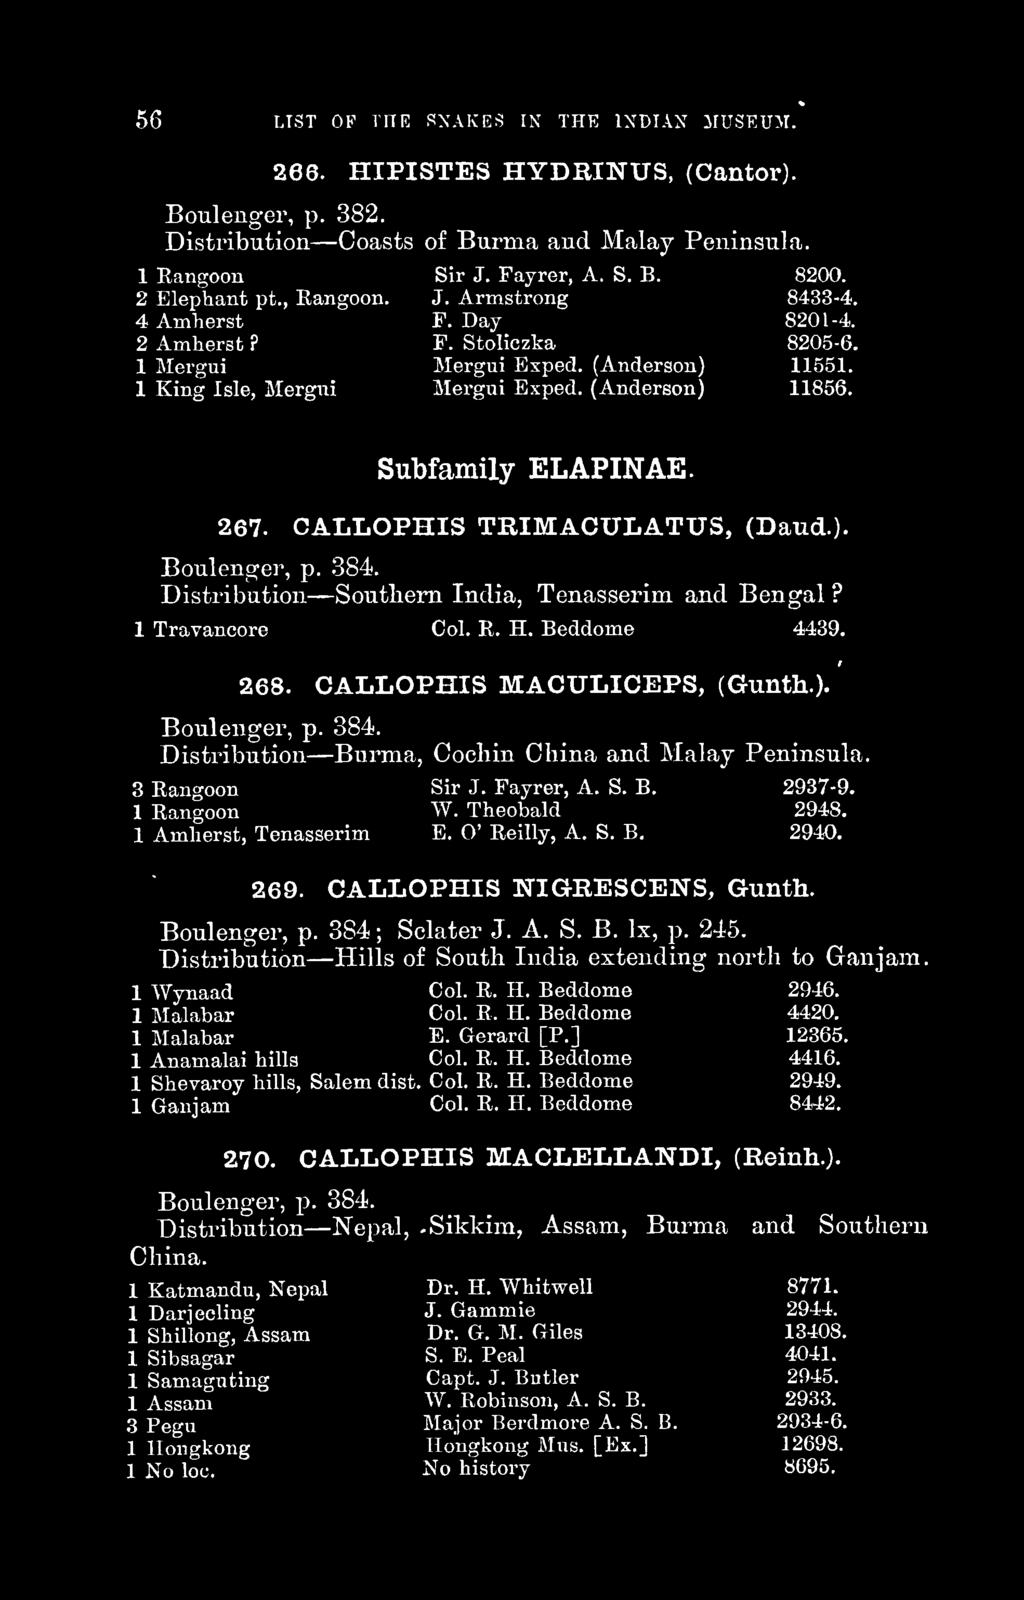 Subfamily ELAPINAE. 267. CALLOPHIS TRIMACULATUS, (Baud.). Boulenger, p. 384. Distribution Southern India, Tenasserim and Bengal? 1 Travancore Col. R. H. Beddome 4439. 268.